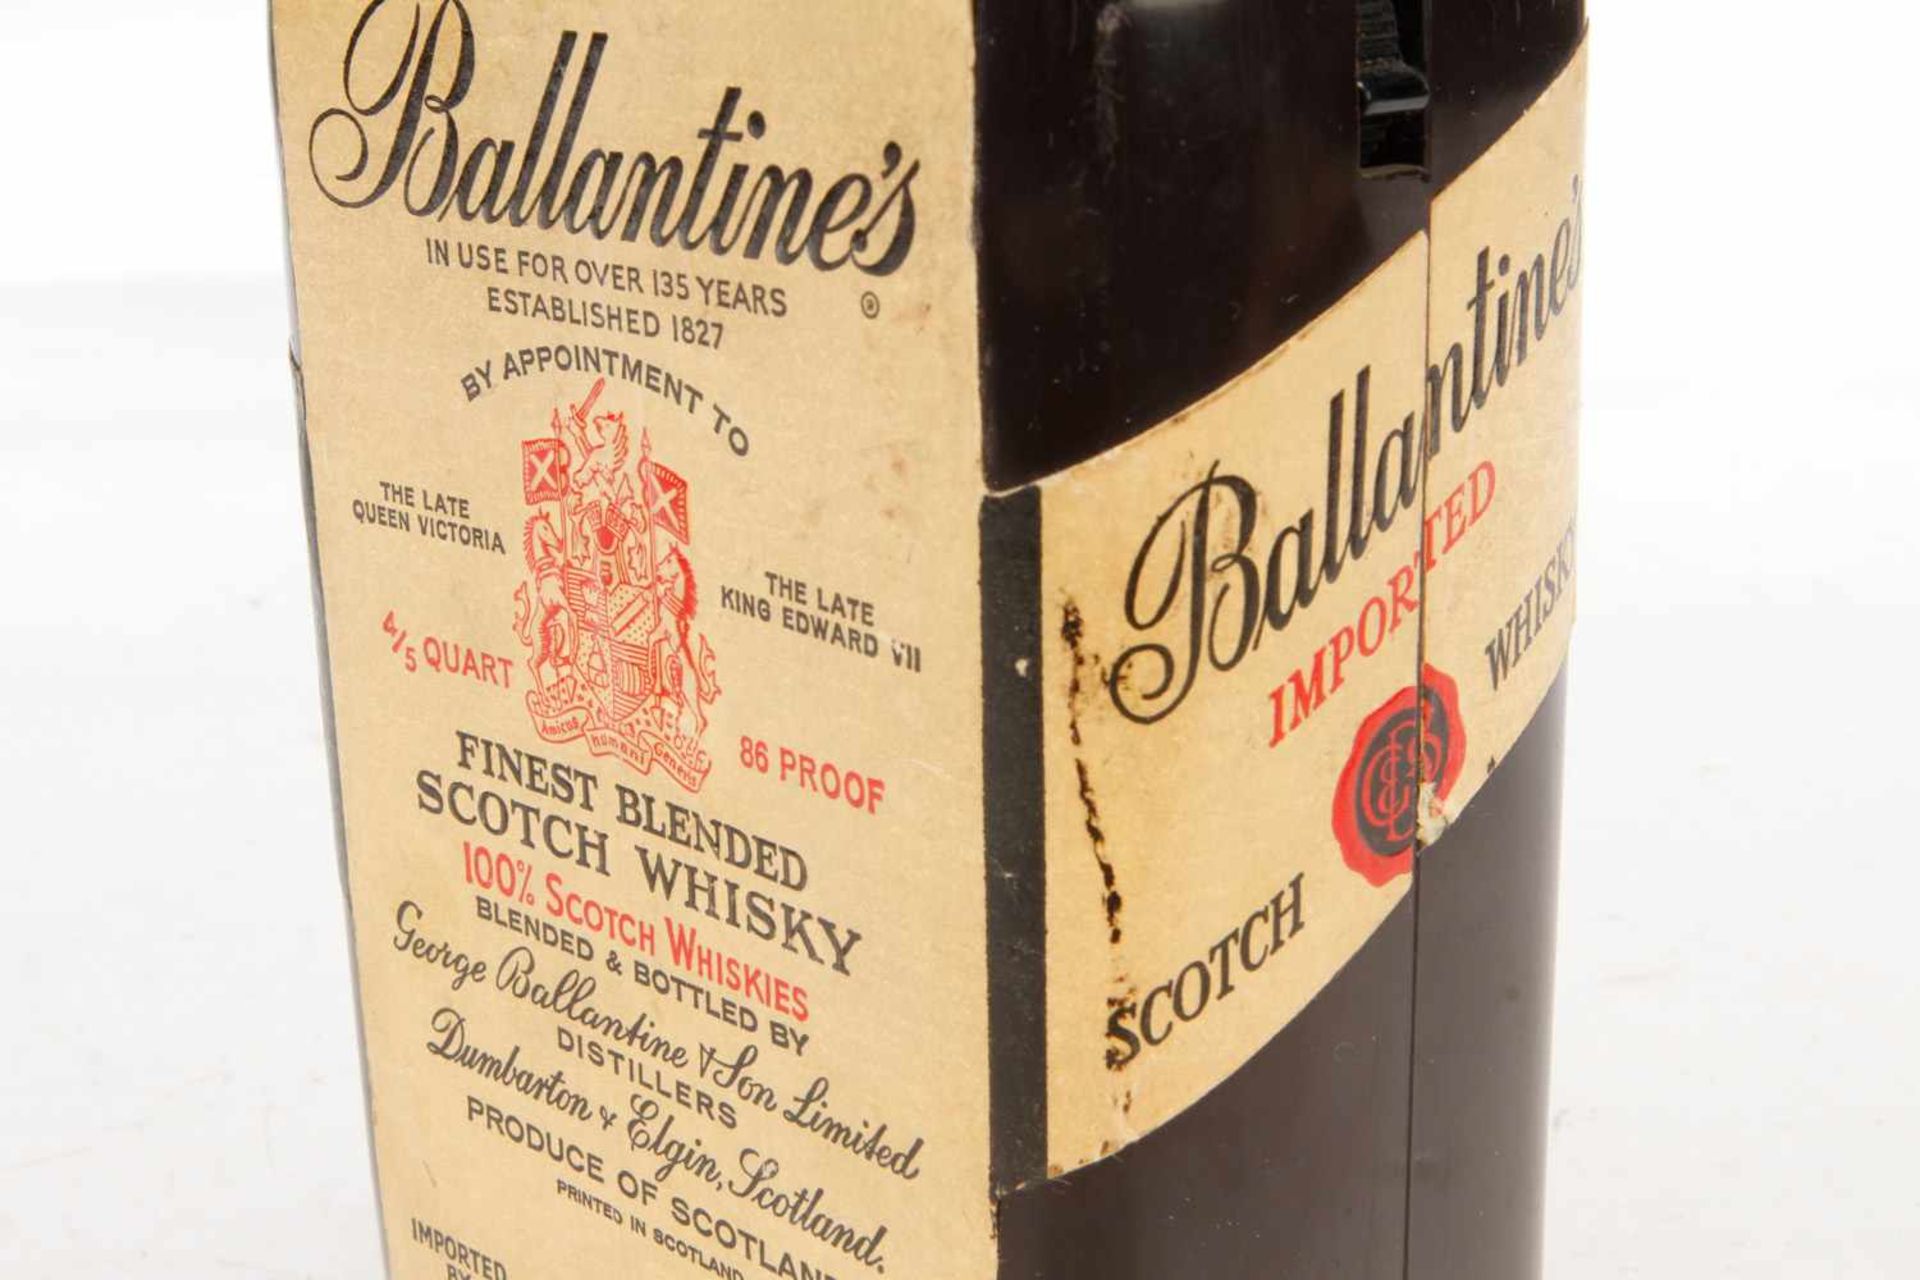 Werbe-Radio in Form einer Ballantines Whisky-Flasche, Höhe 23 cm- - -22.50 % buyer's premium on - Image 2 of 5